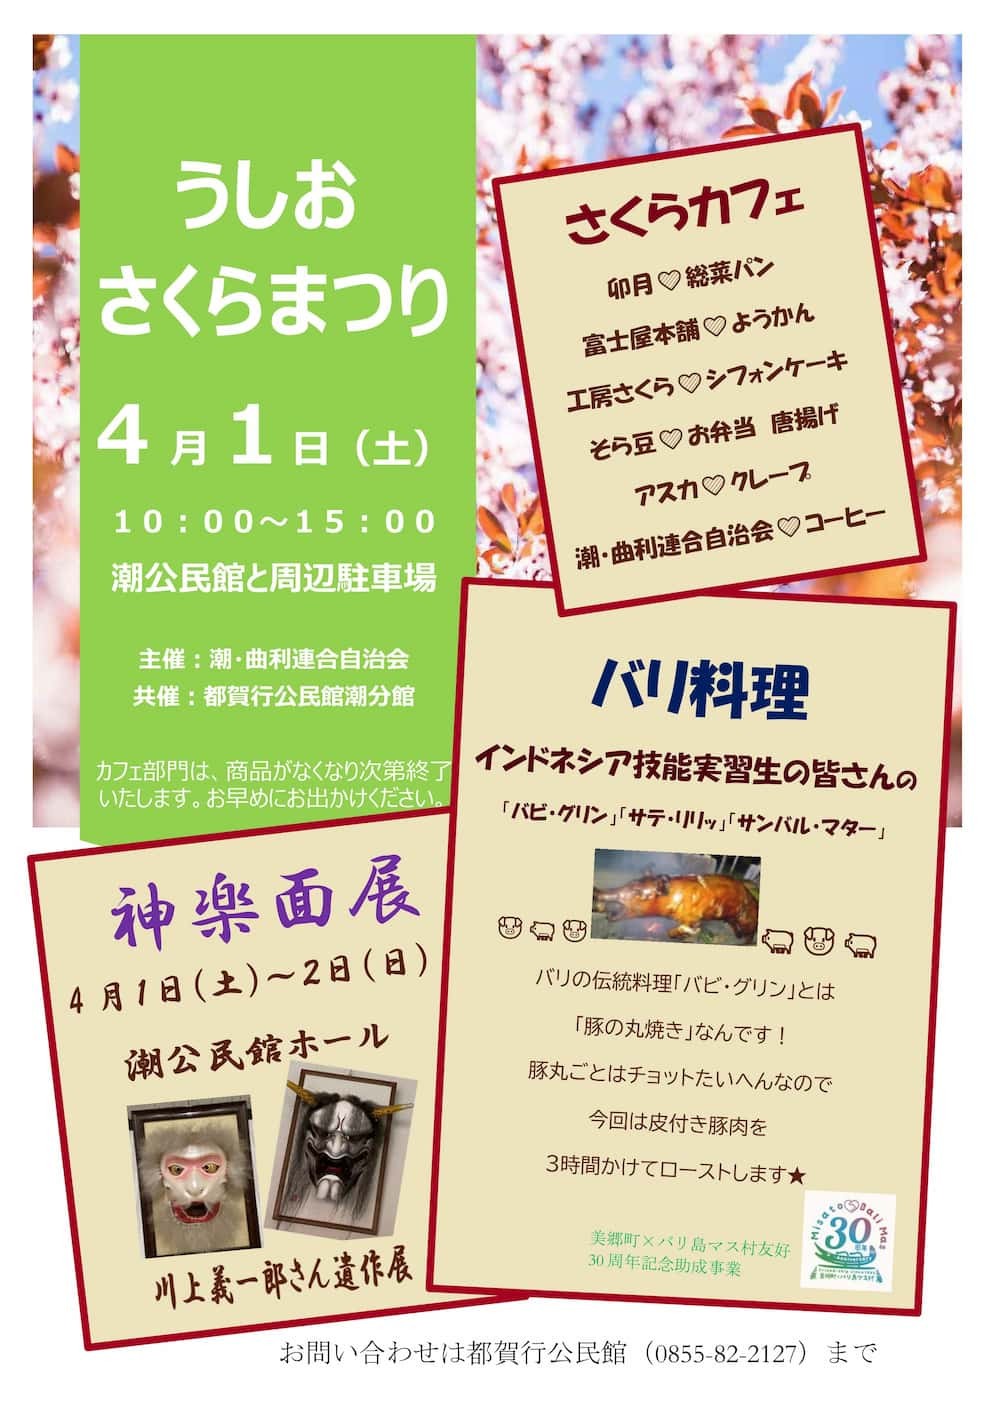 島根県美郷町の桜・お花見イベント「うしおさくらまつり」のチラシ